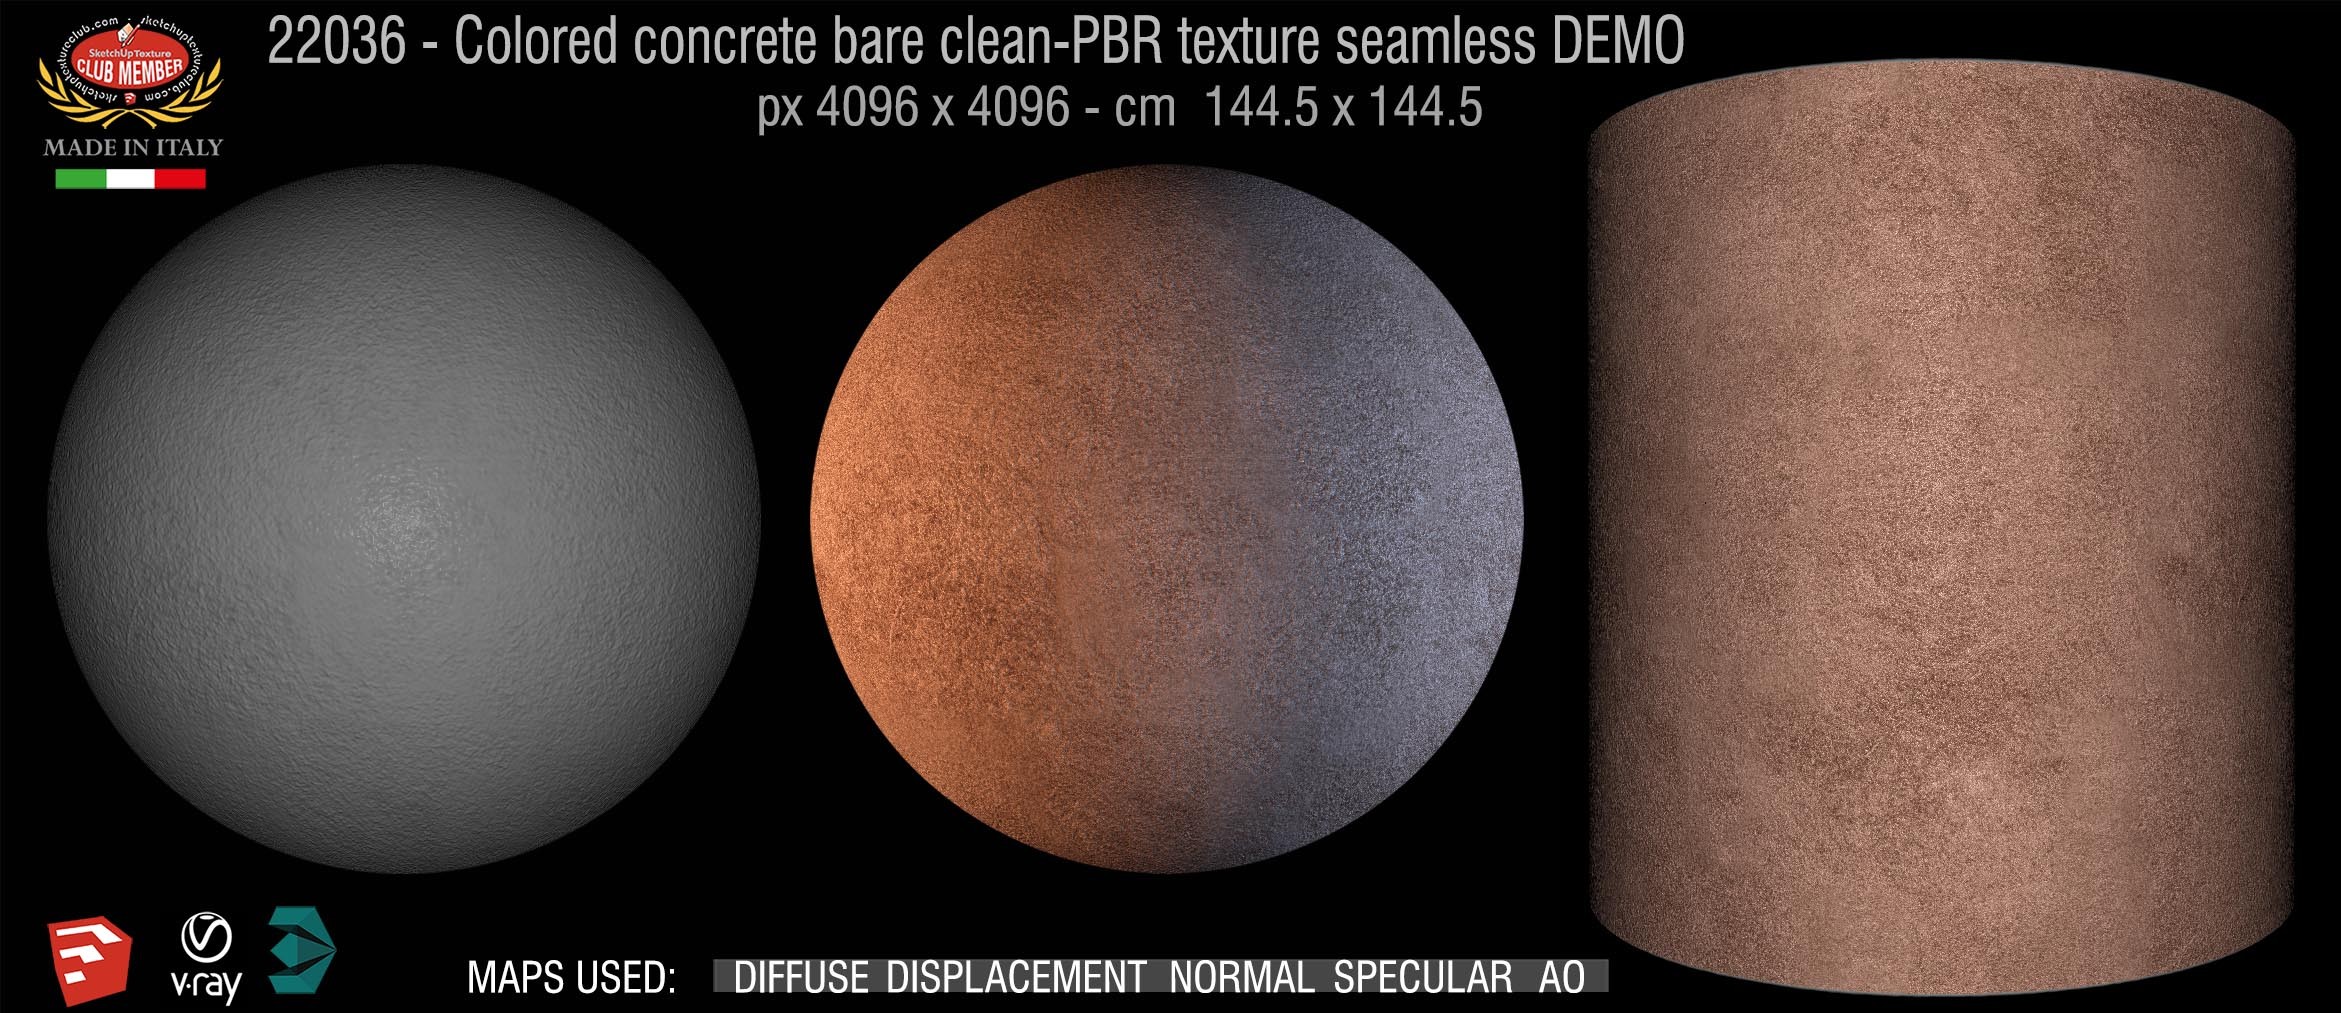 22036 colored concrete bare PBR texture seamless DEMO